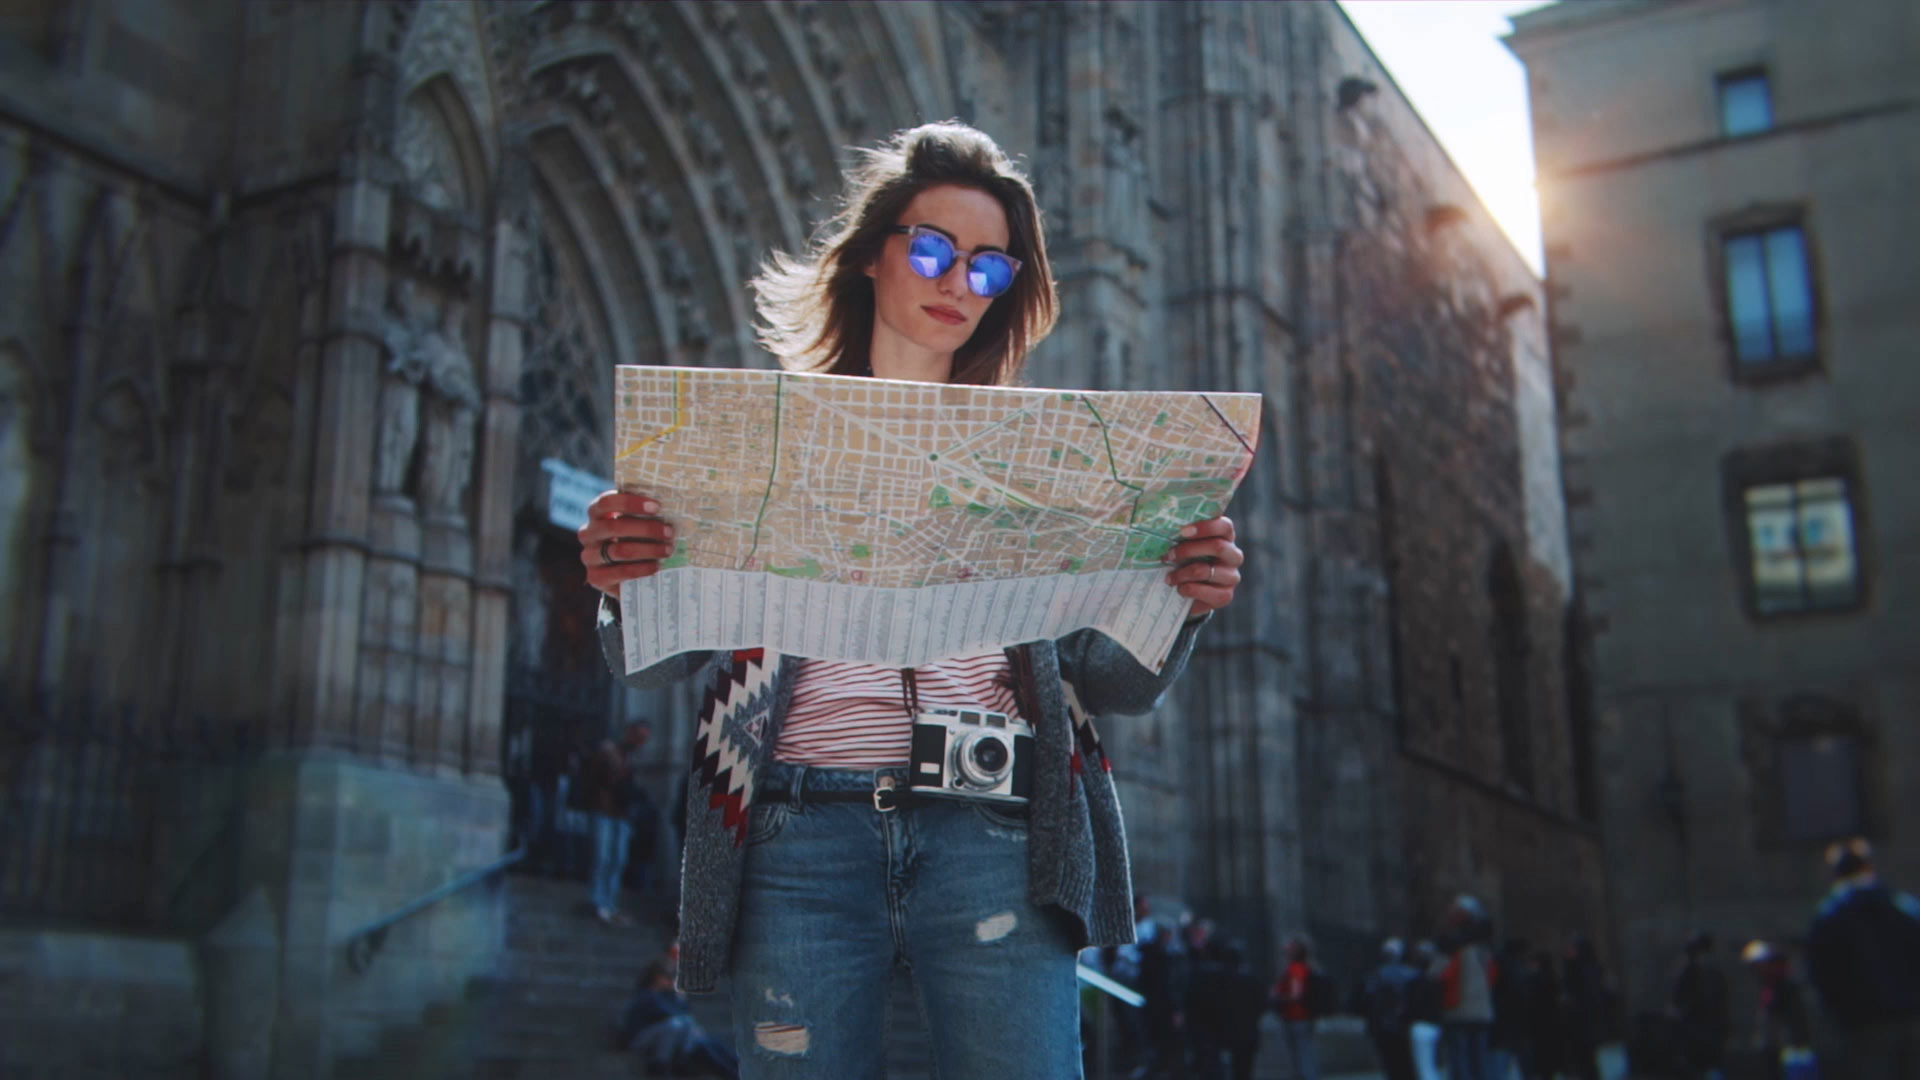 سائح في برشلونة يبحث في الخريطة مع كاتدرائية برشلونة في الخلفية.